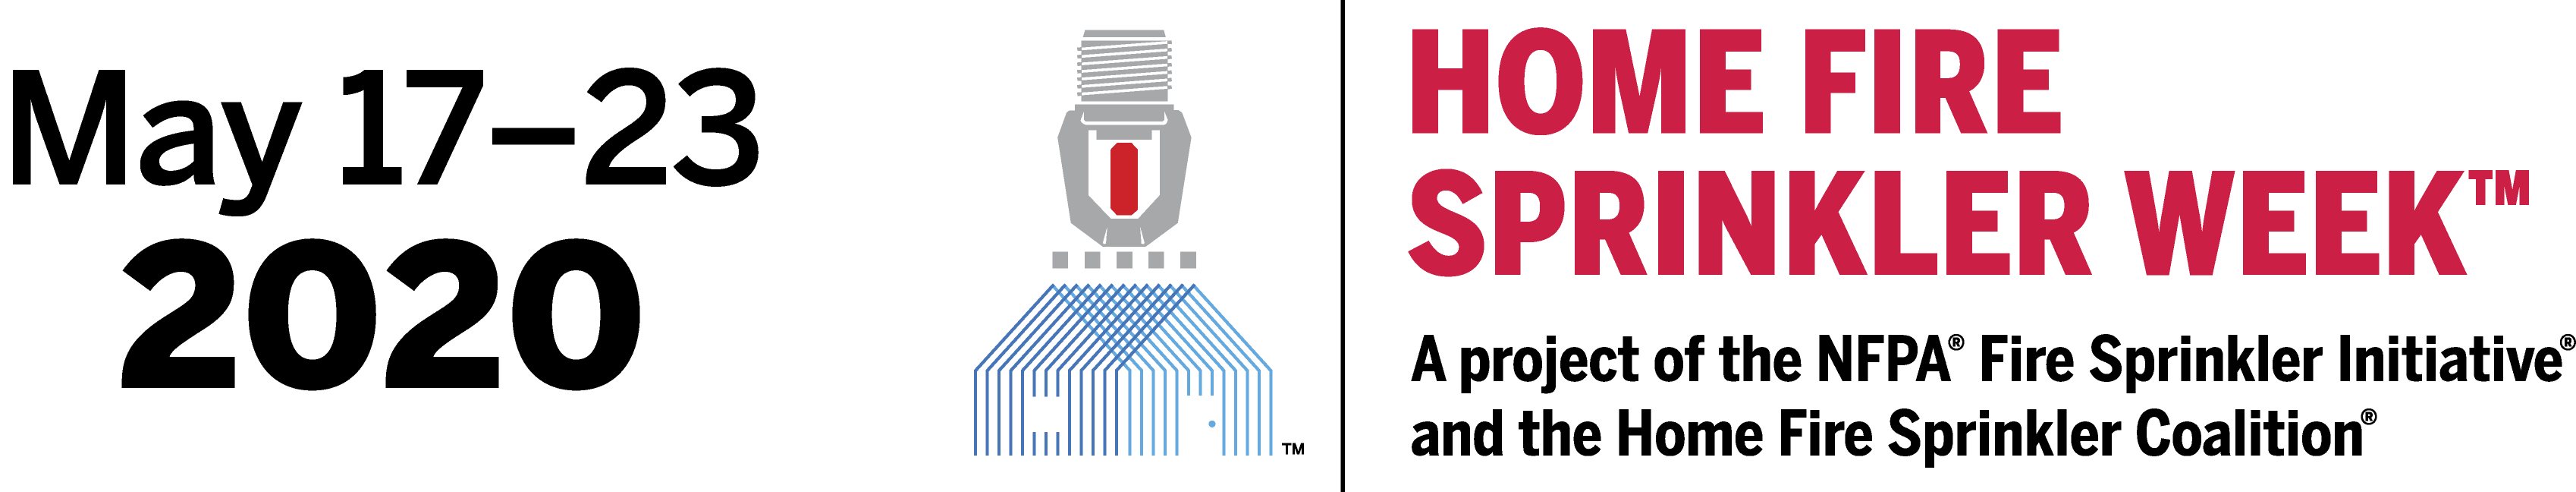 Home Fire Sprinkler Week 2020